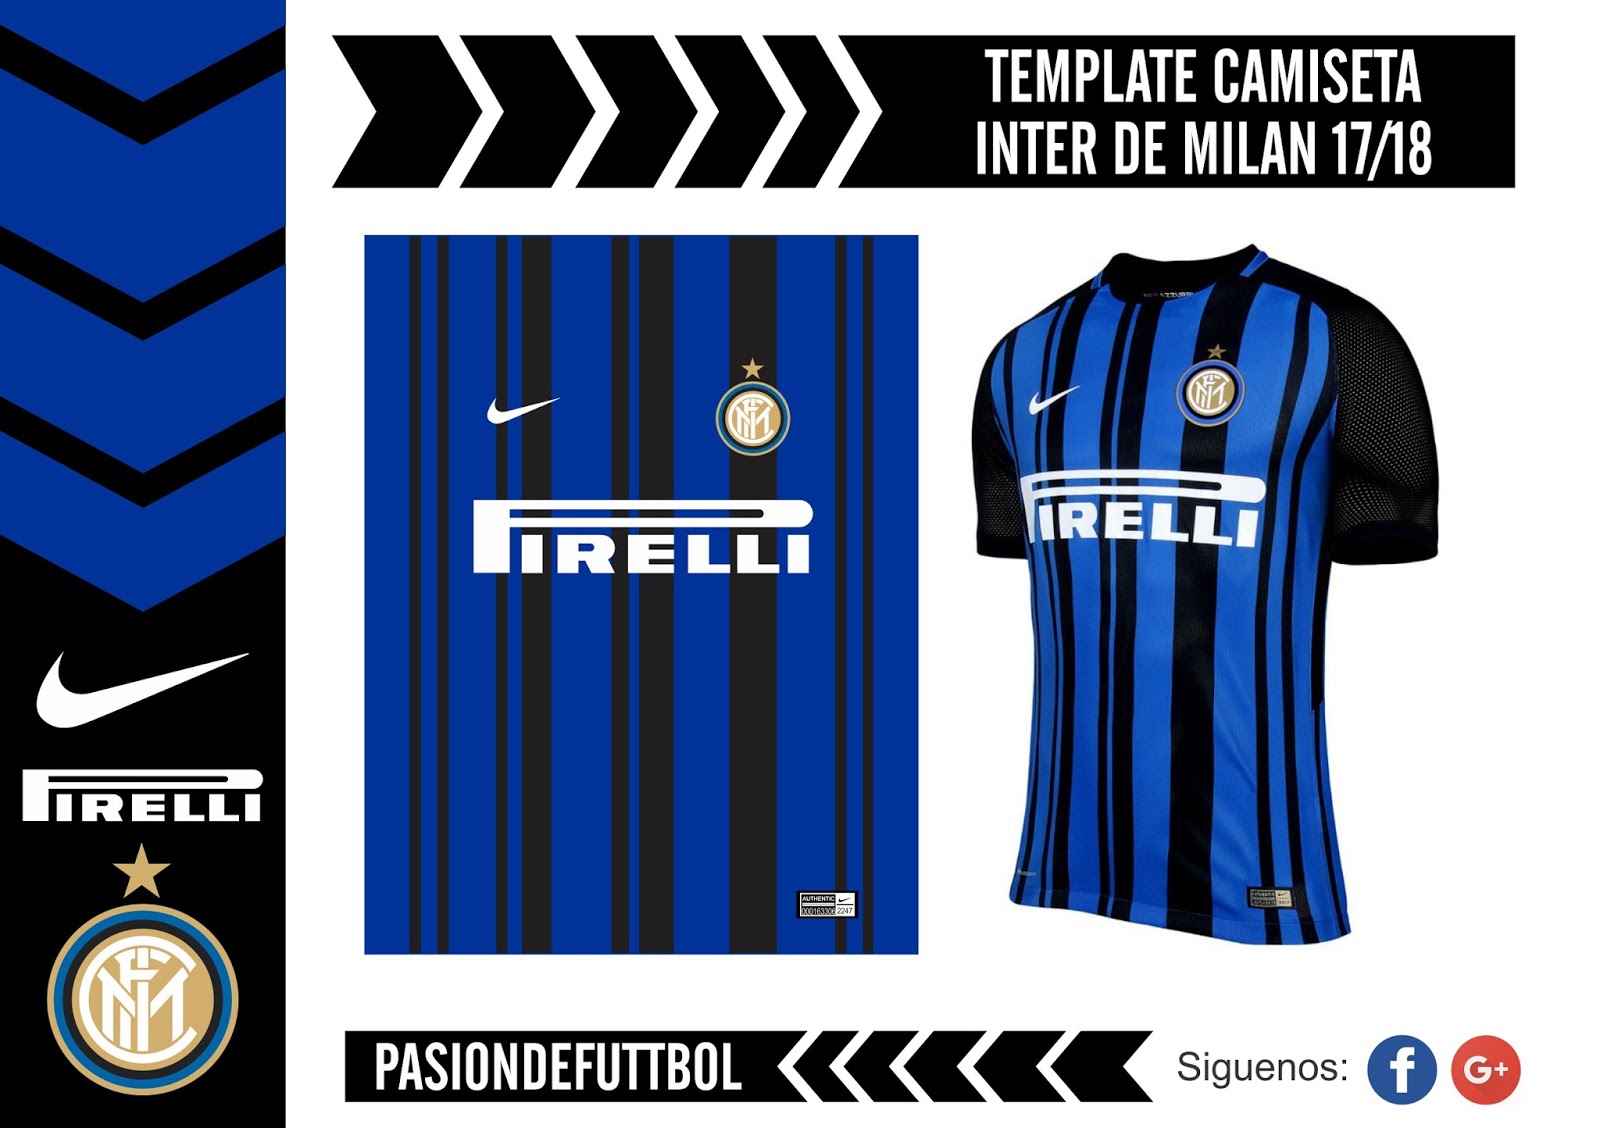 Diseños, Vectores y Templates para Camisetas de Futbol: TEMPLATE CAMISETA INTER DE MILAN 2017/2018